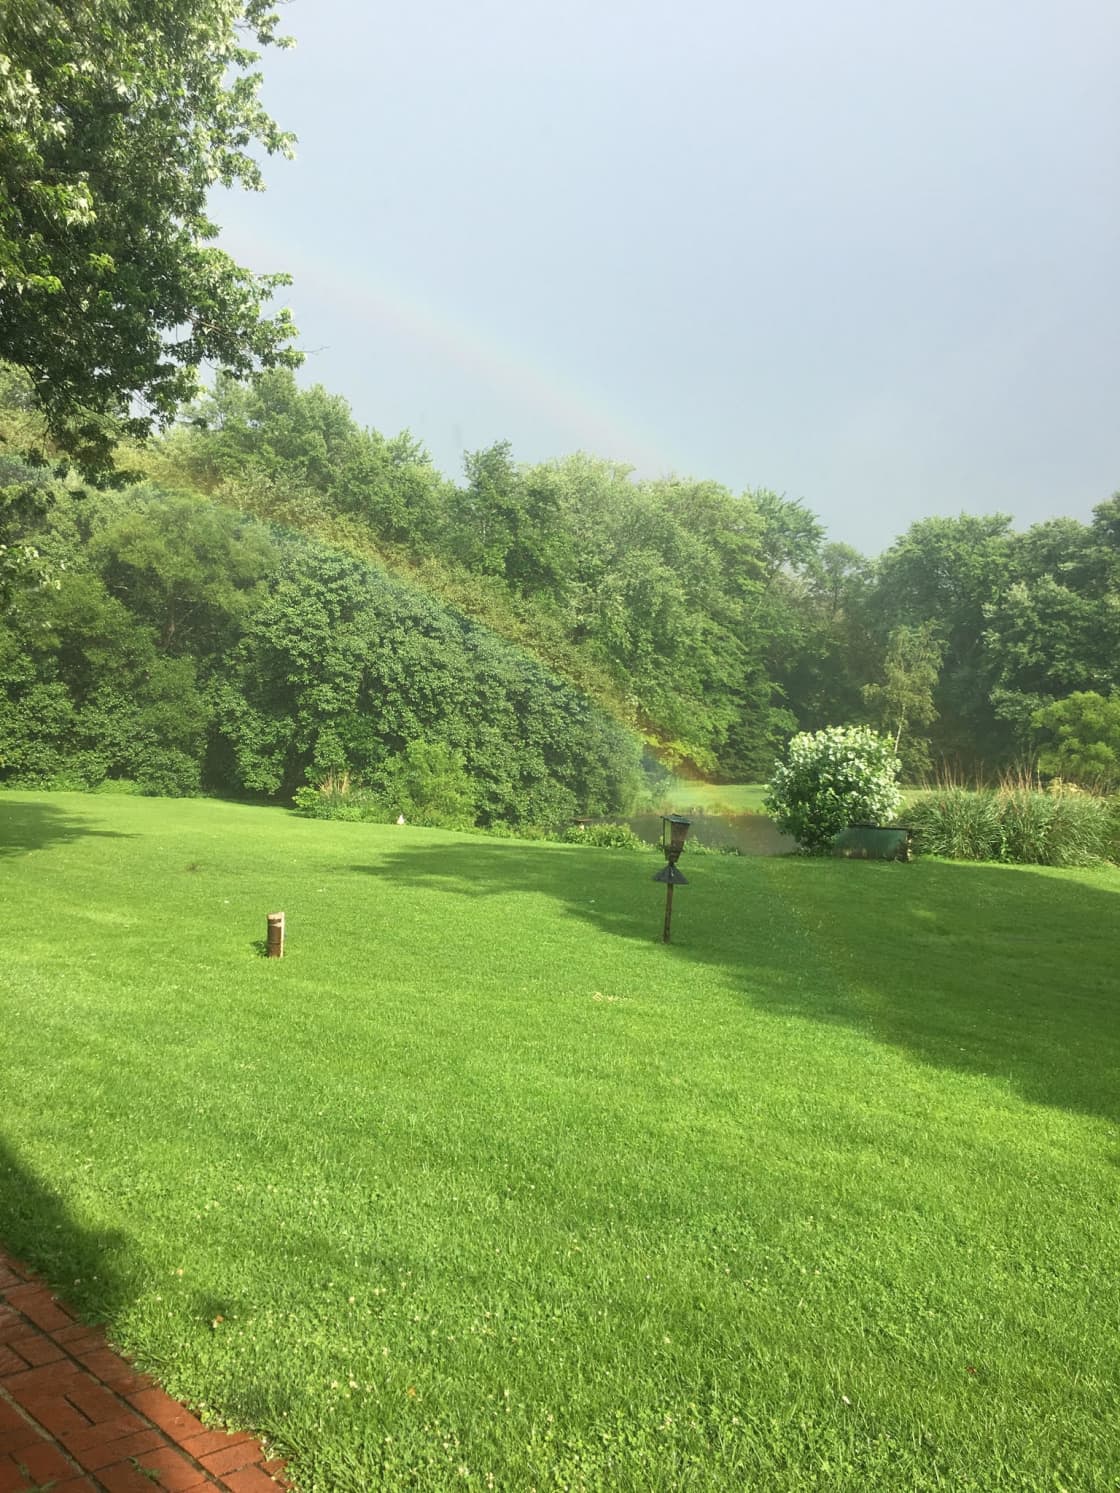 unbelievable double rainbow